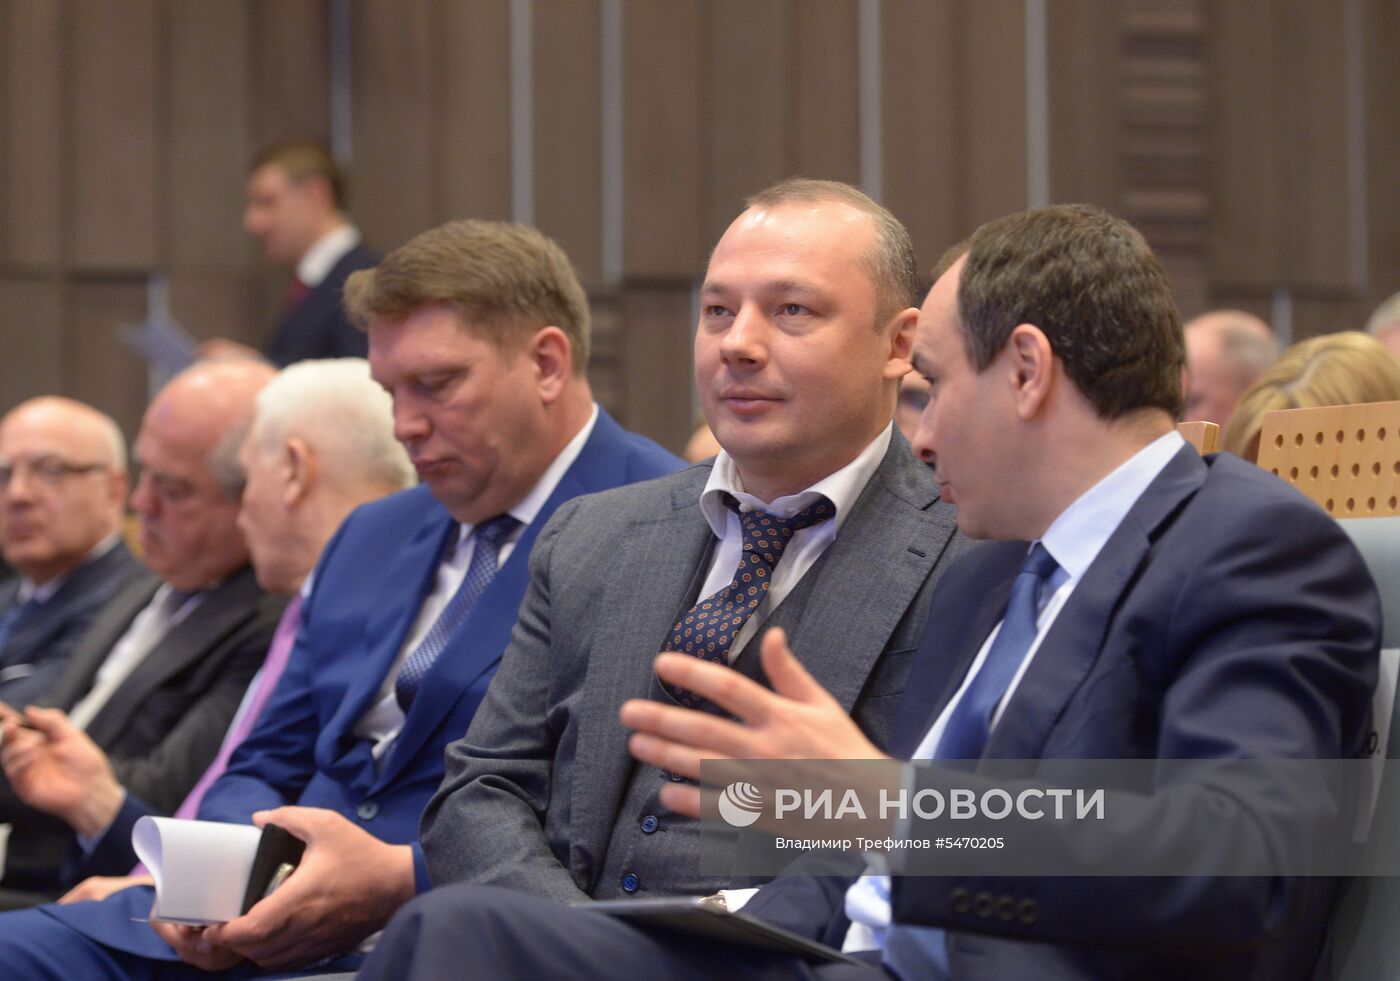 Заседание расширенной коллегии Министерства энергетики РФ